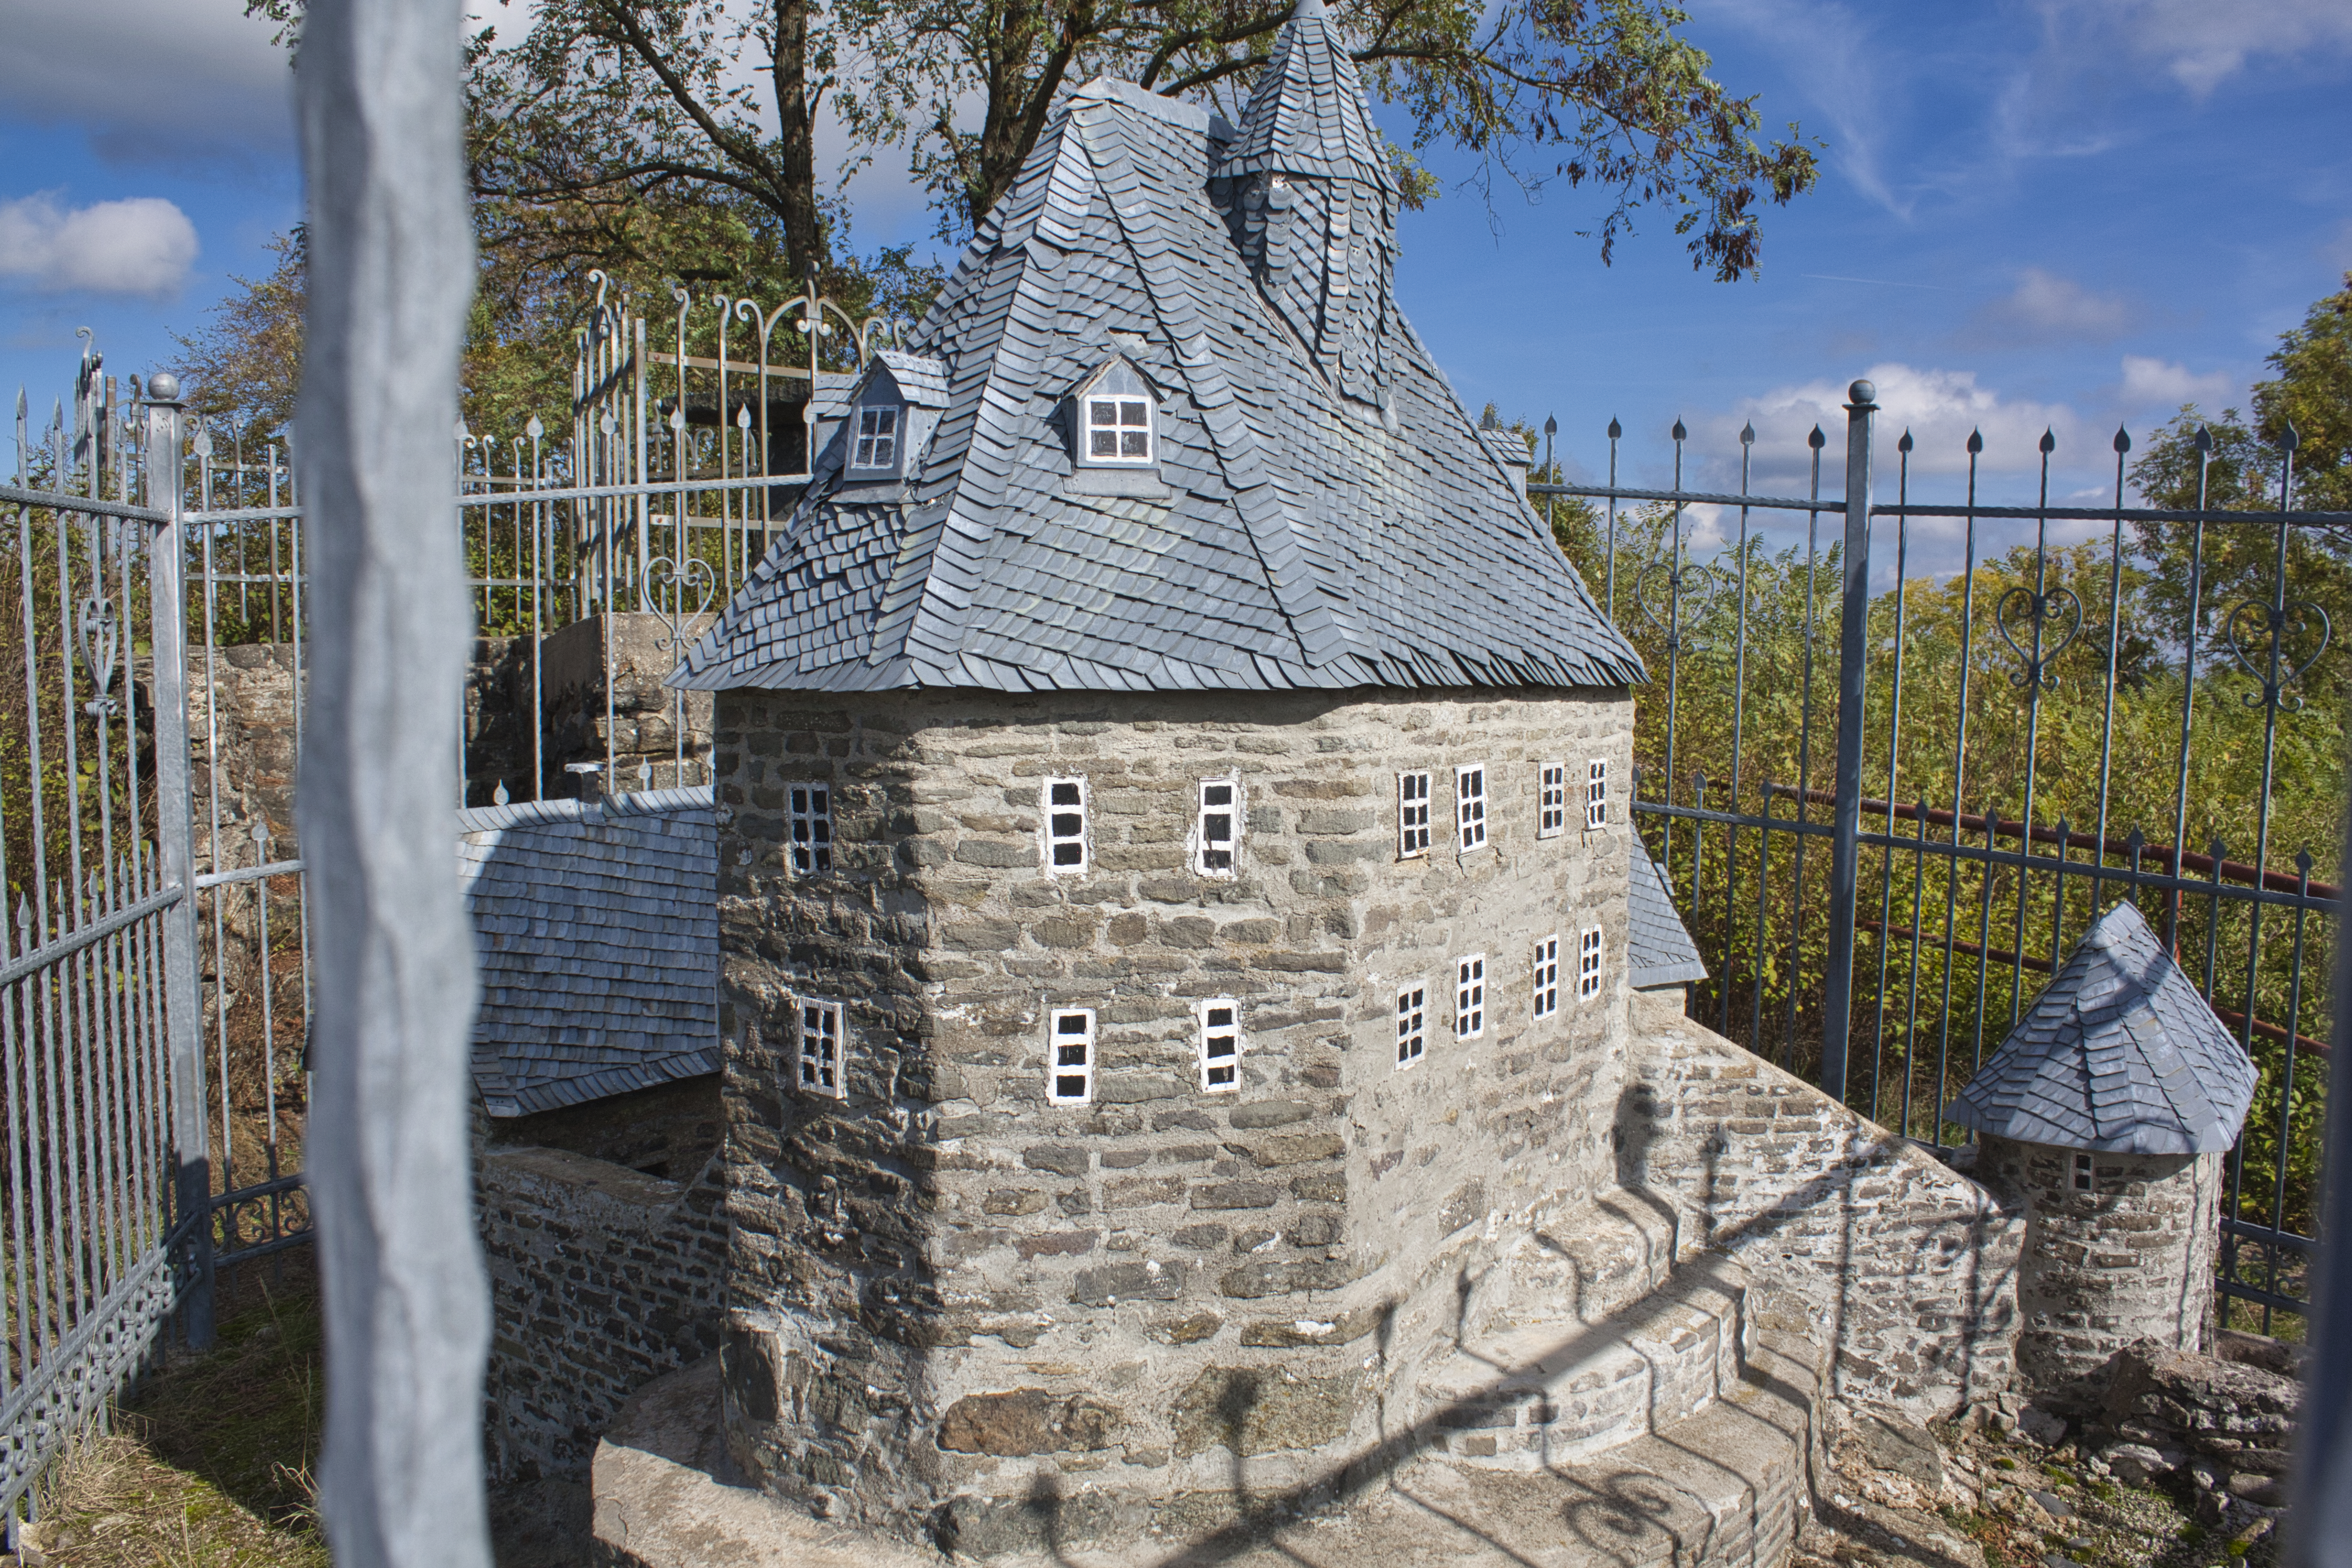 Modell der Burg Tringenstein in Siegbach.
